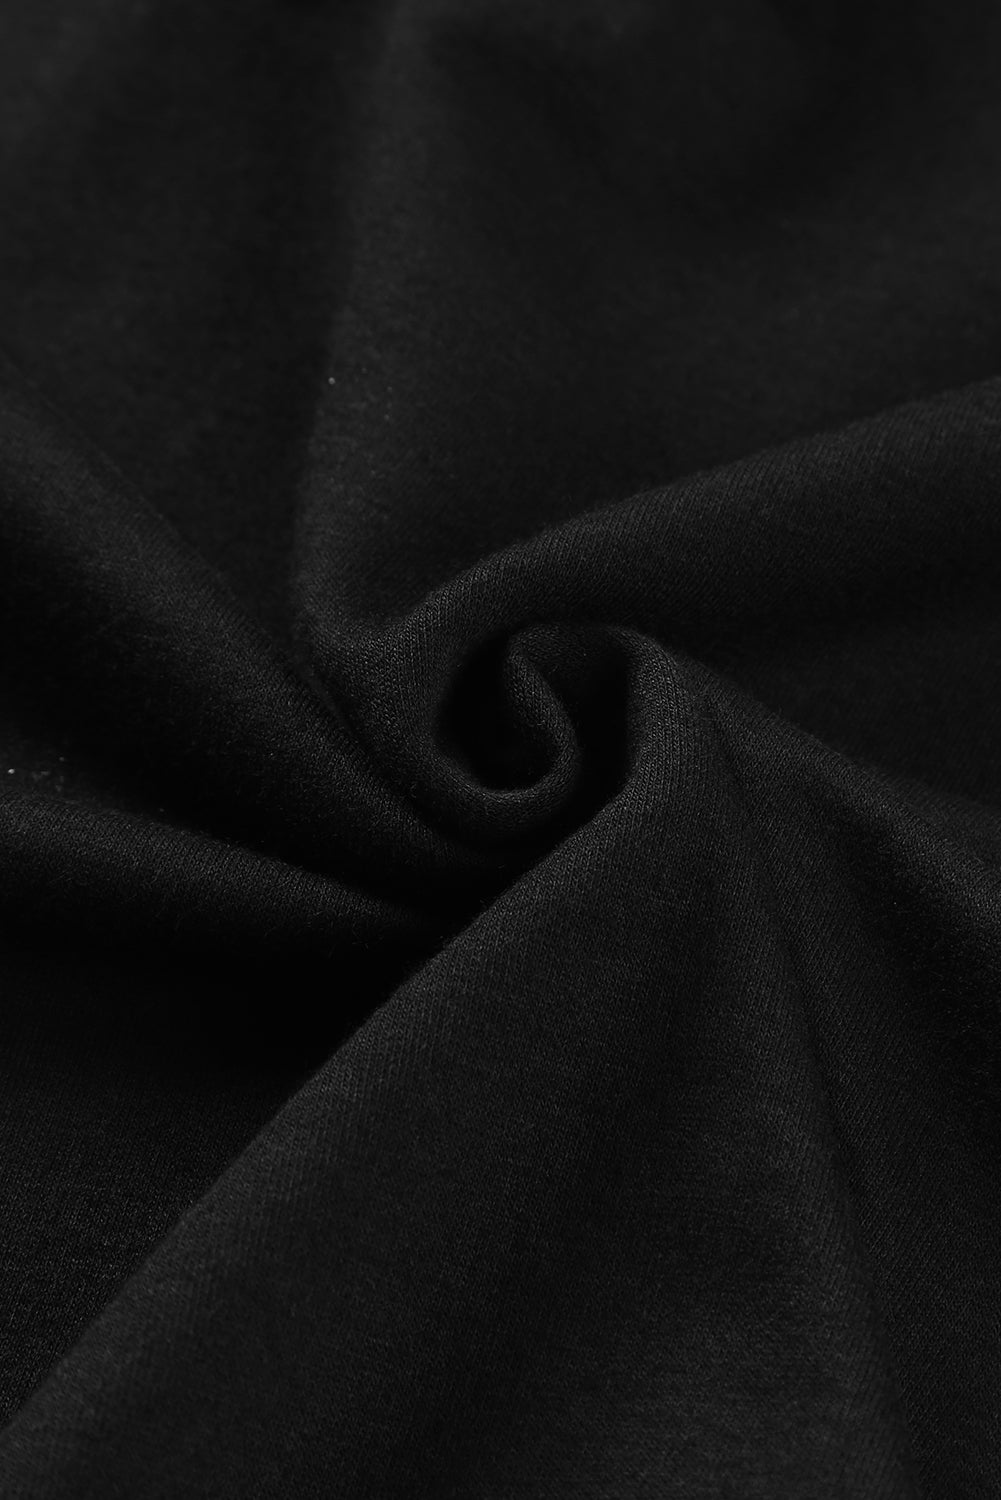 Black Rhinestone Ruffled Hollow Out Mini Dress Mini Dresses JT's Designer Fashion